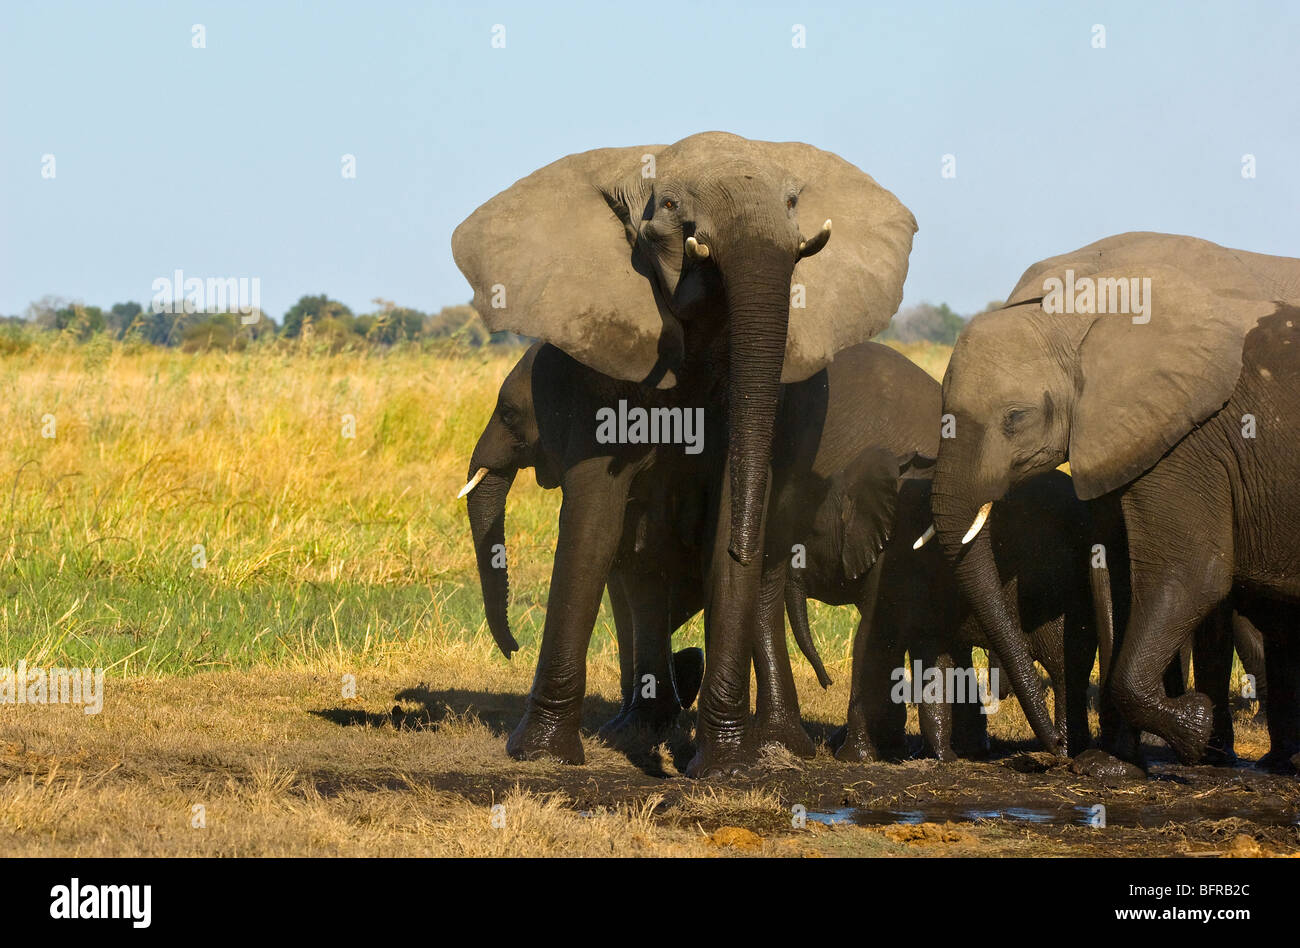 Un elefante vaca levanta su cabeza y se encuentra en una postura de amenaza Foto de stock